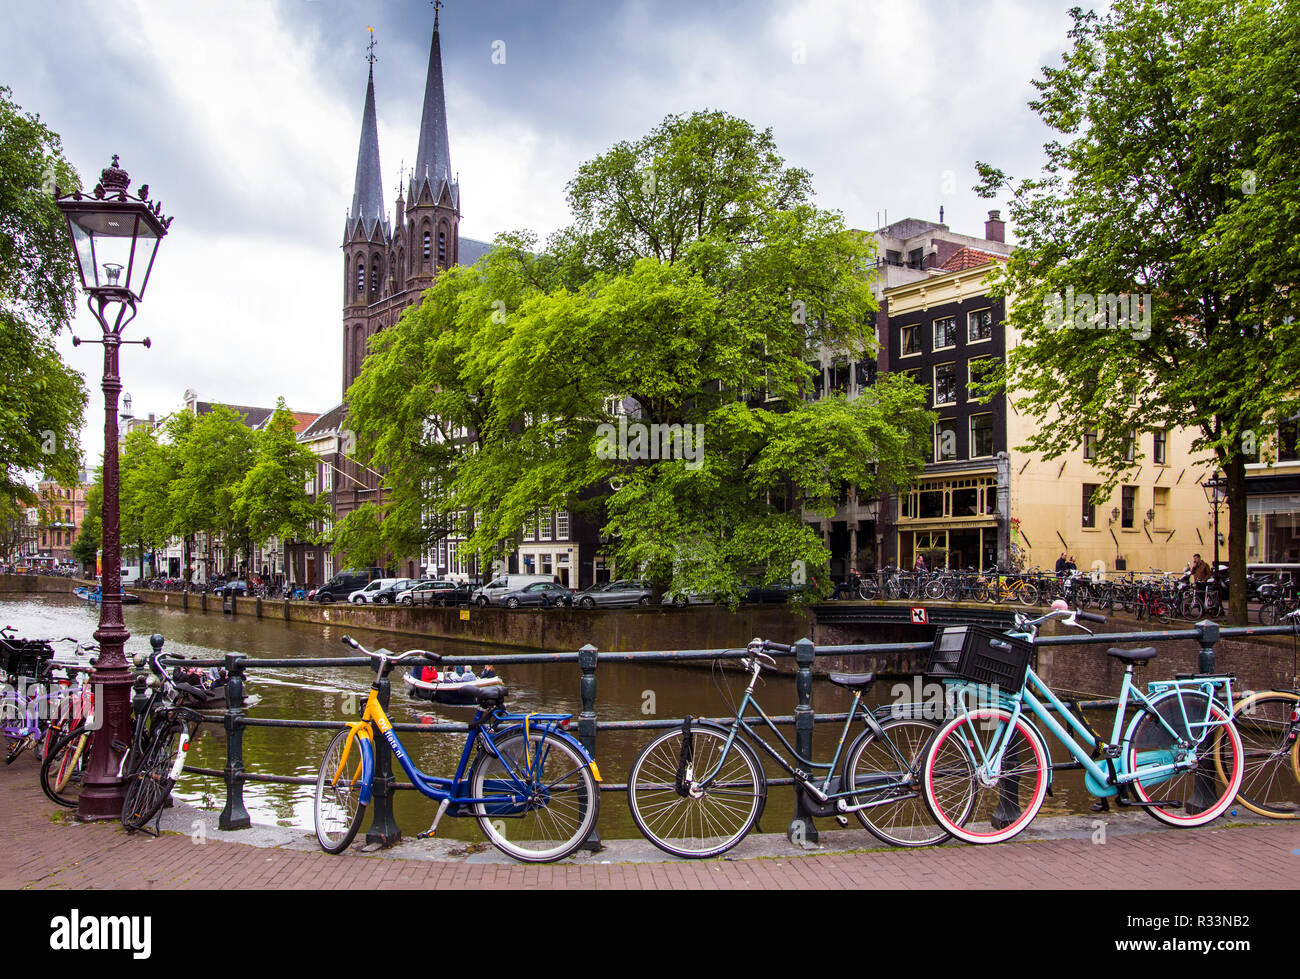 Des vélos sur un pont-canal d'Amsterdam. Pays-bas Banque D'Images